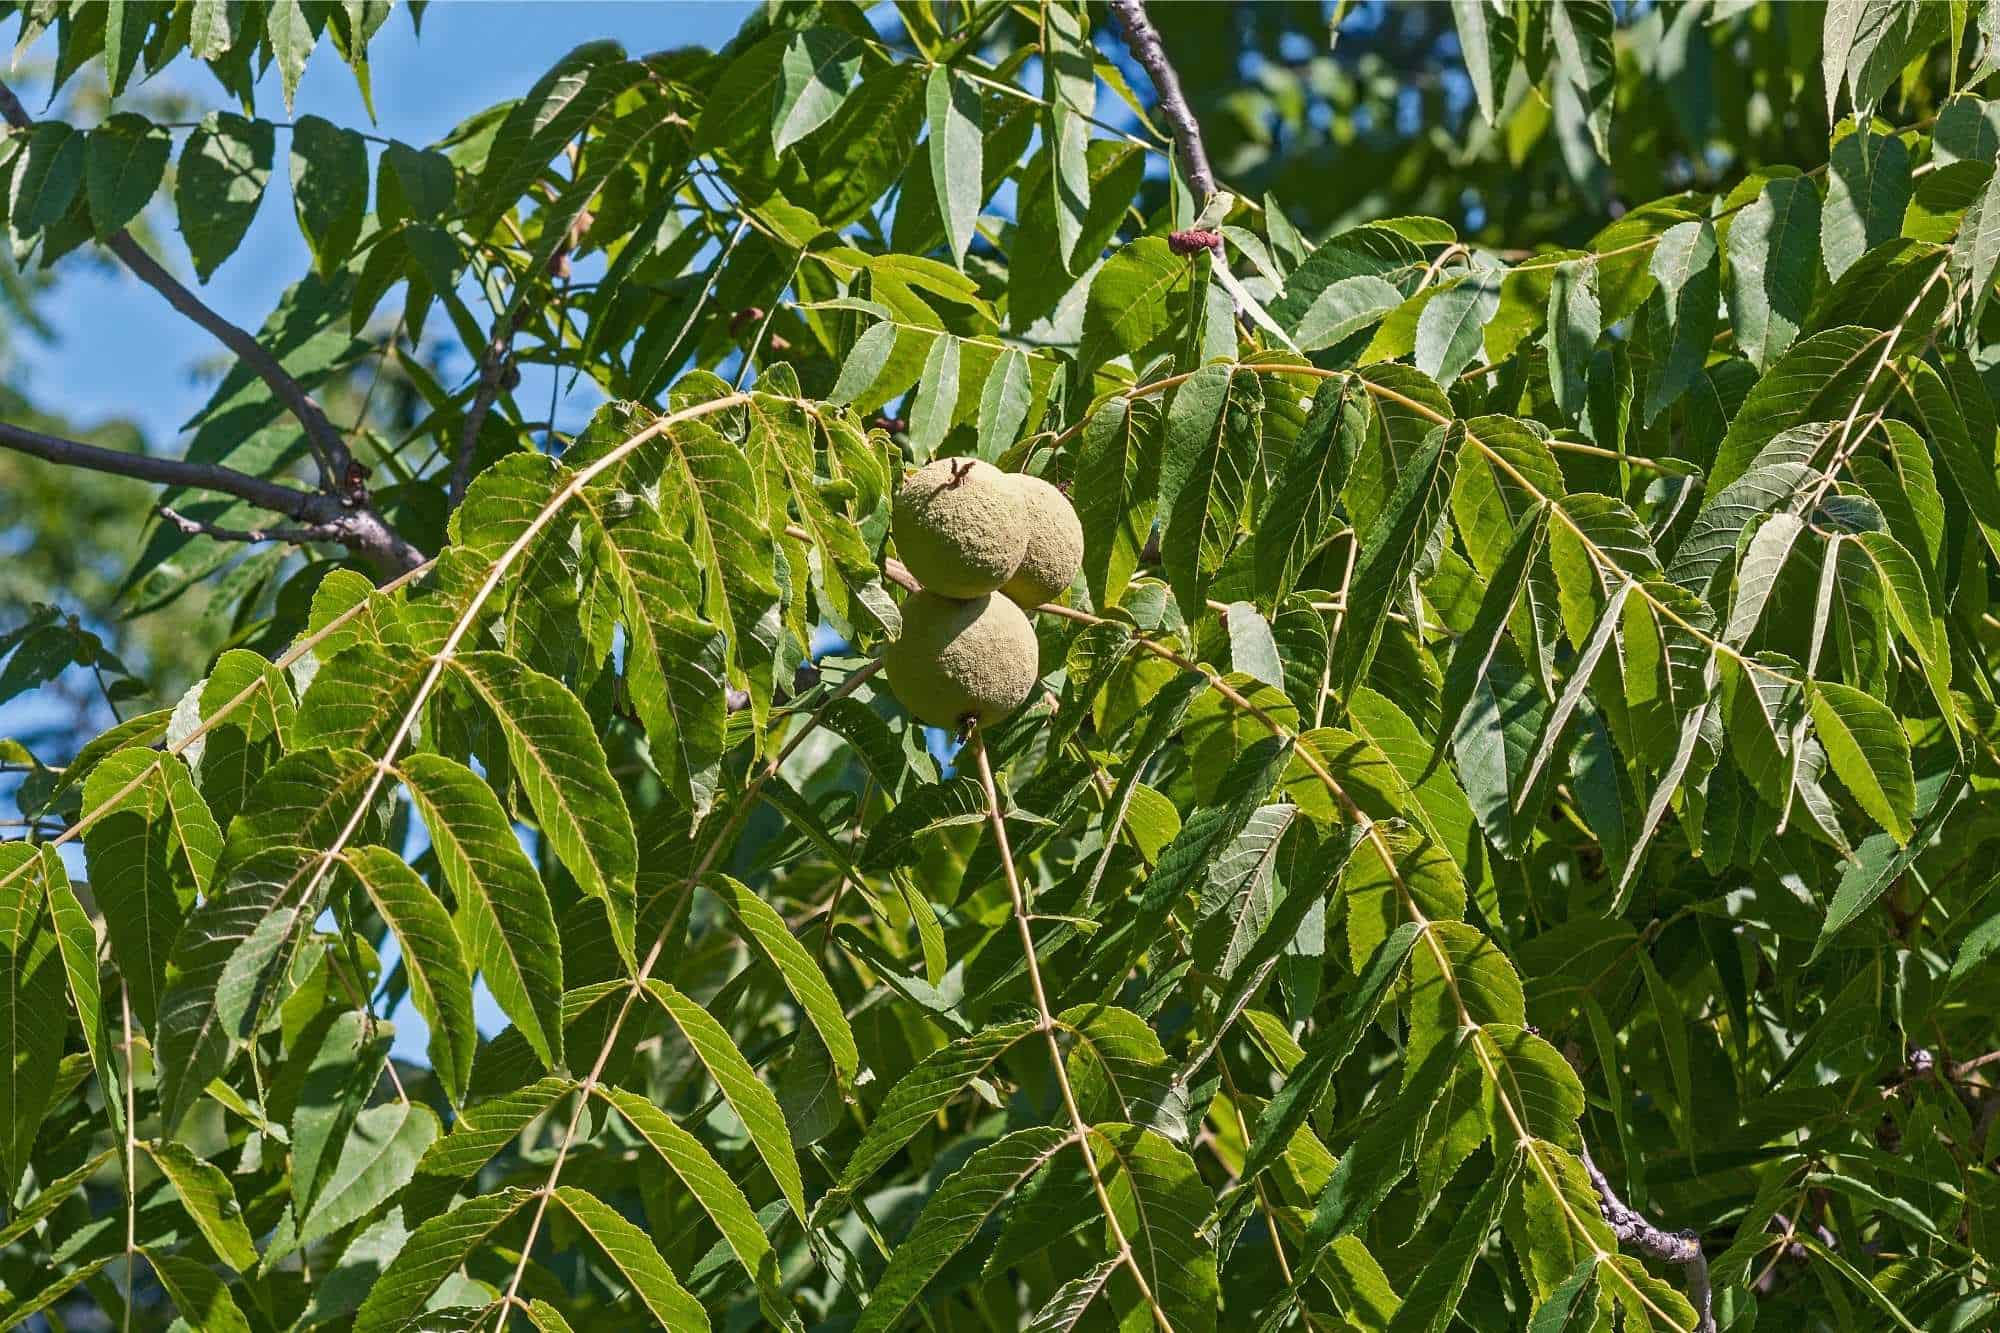 Black walnut tree with fruit.